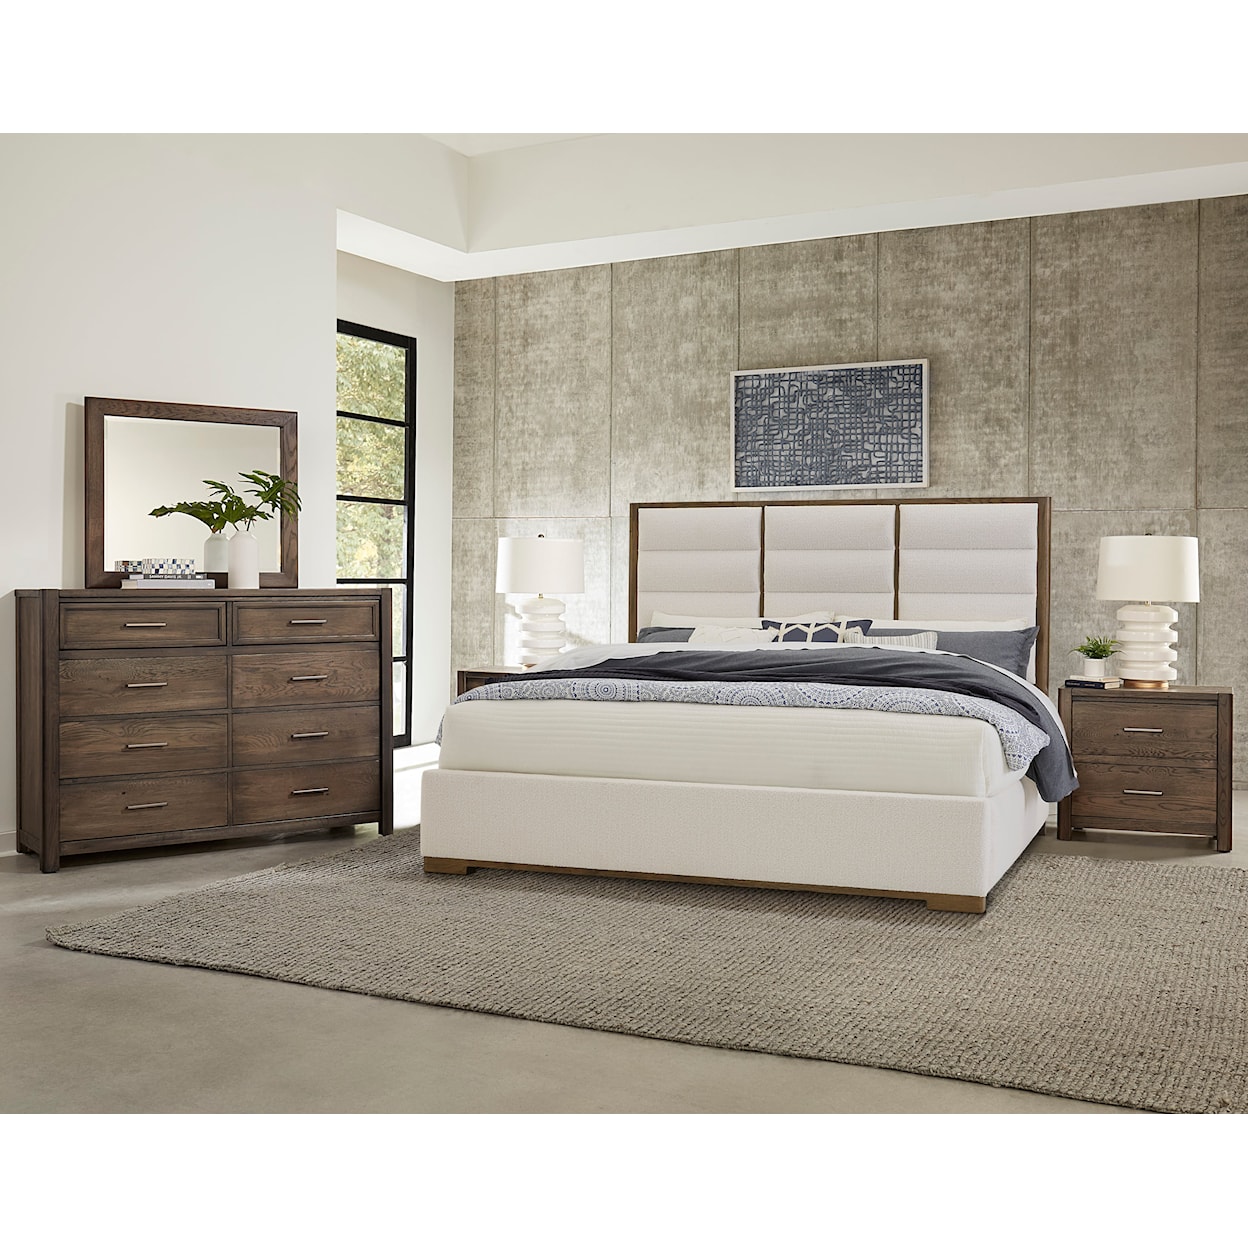 Vaughan-Bassett Charter Oak King Upholstered Bedroom Set